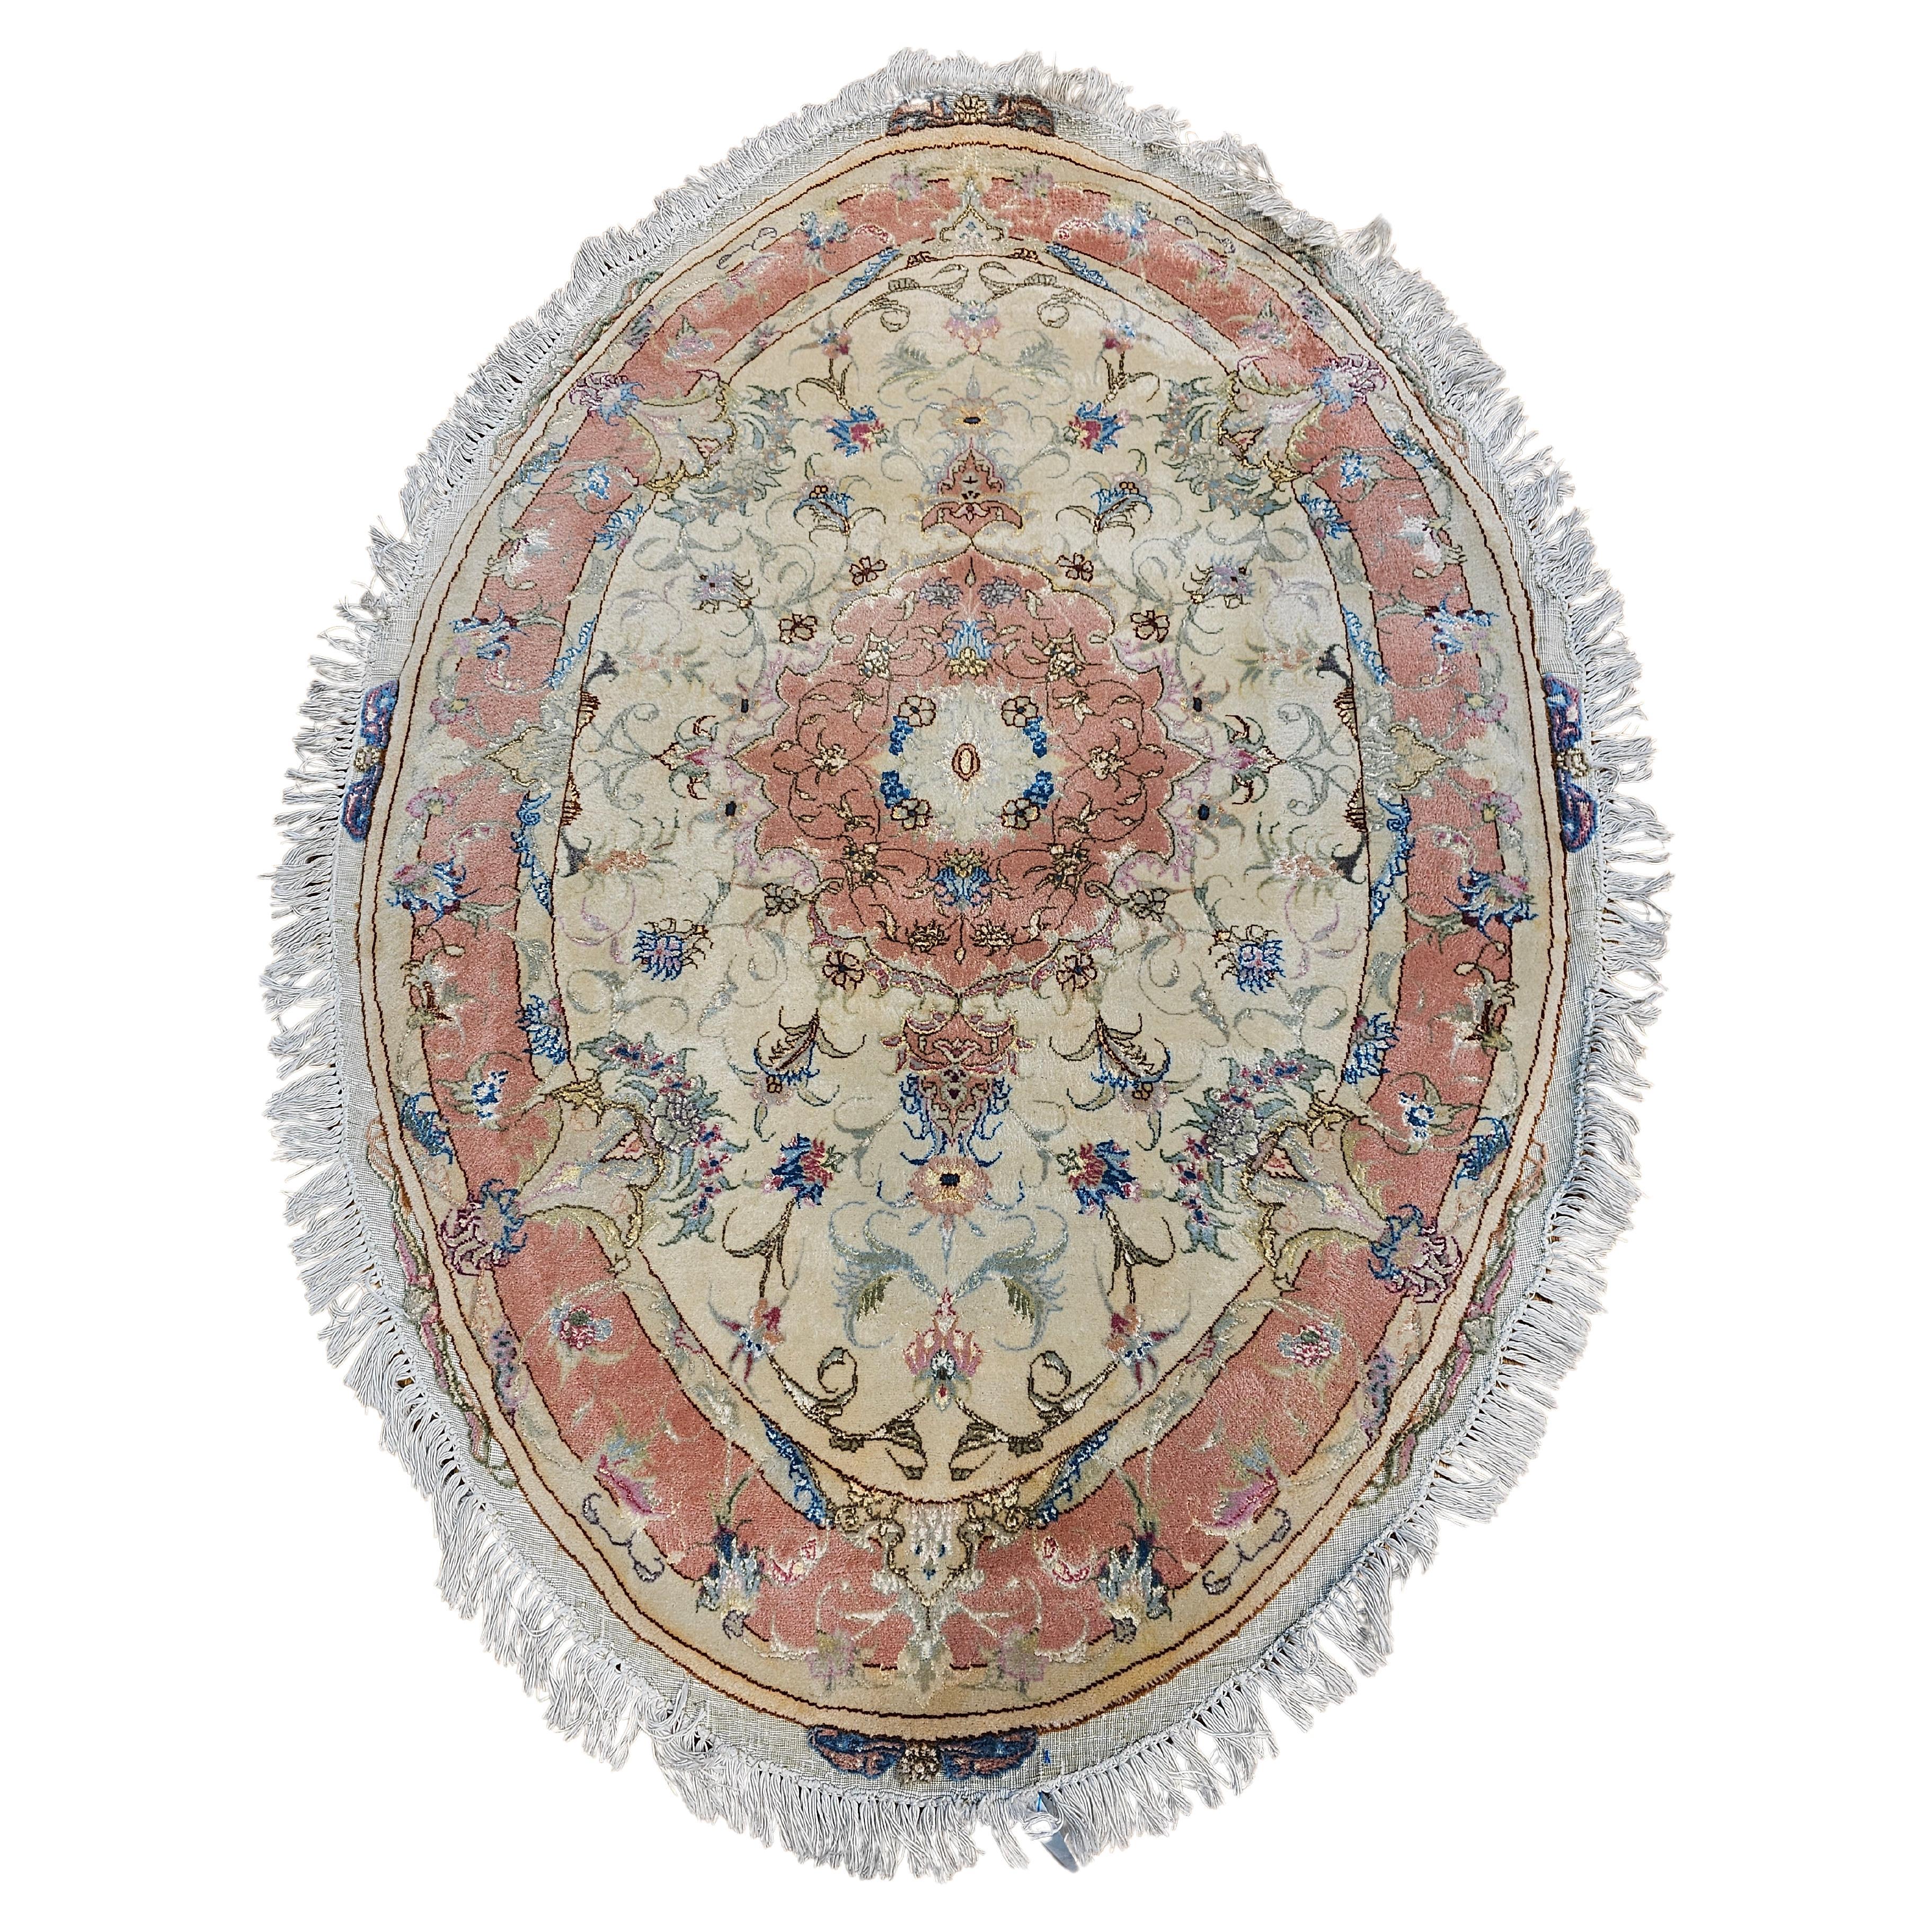 Ovaler geformter persischer Täbris im Vintage-Stil in Floral-Muster in Elfenbein, Blassrosa, Blau